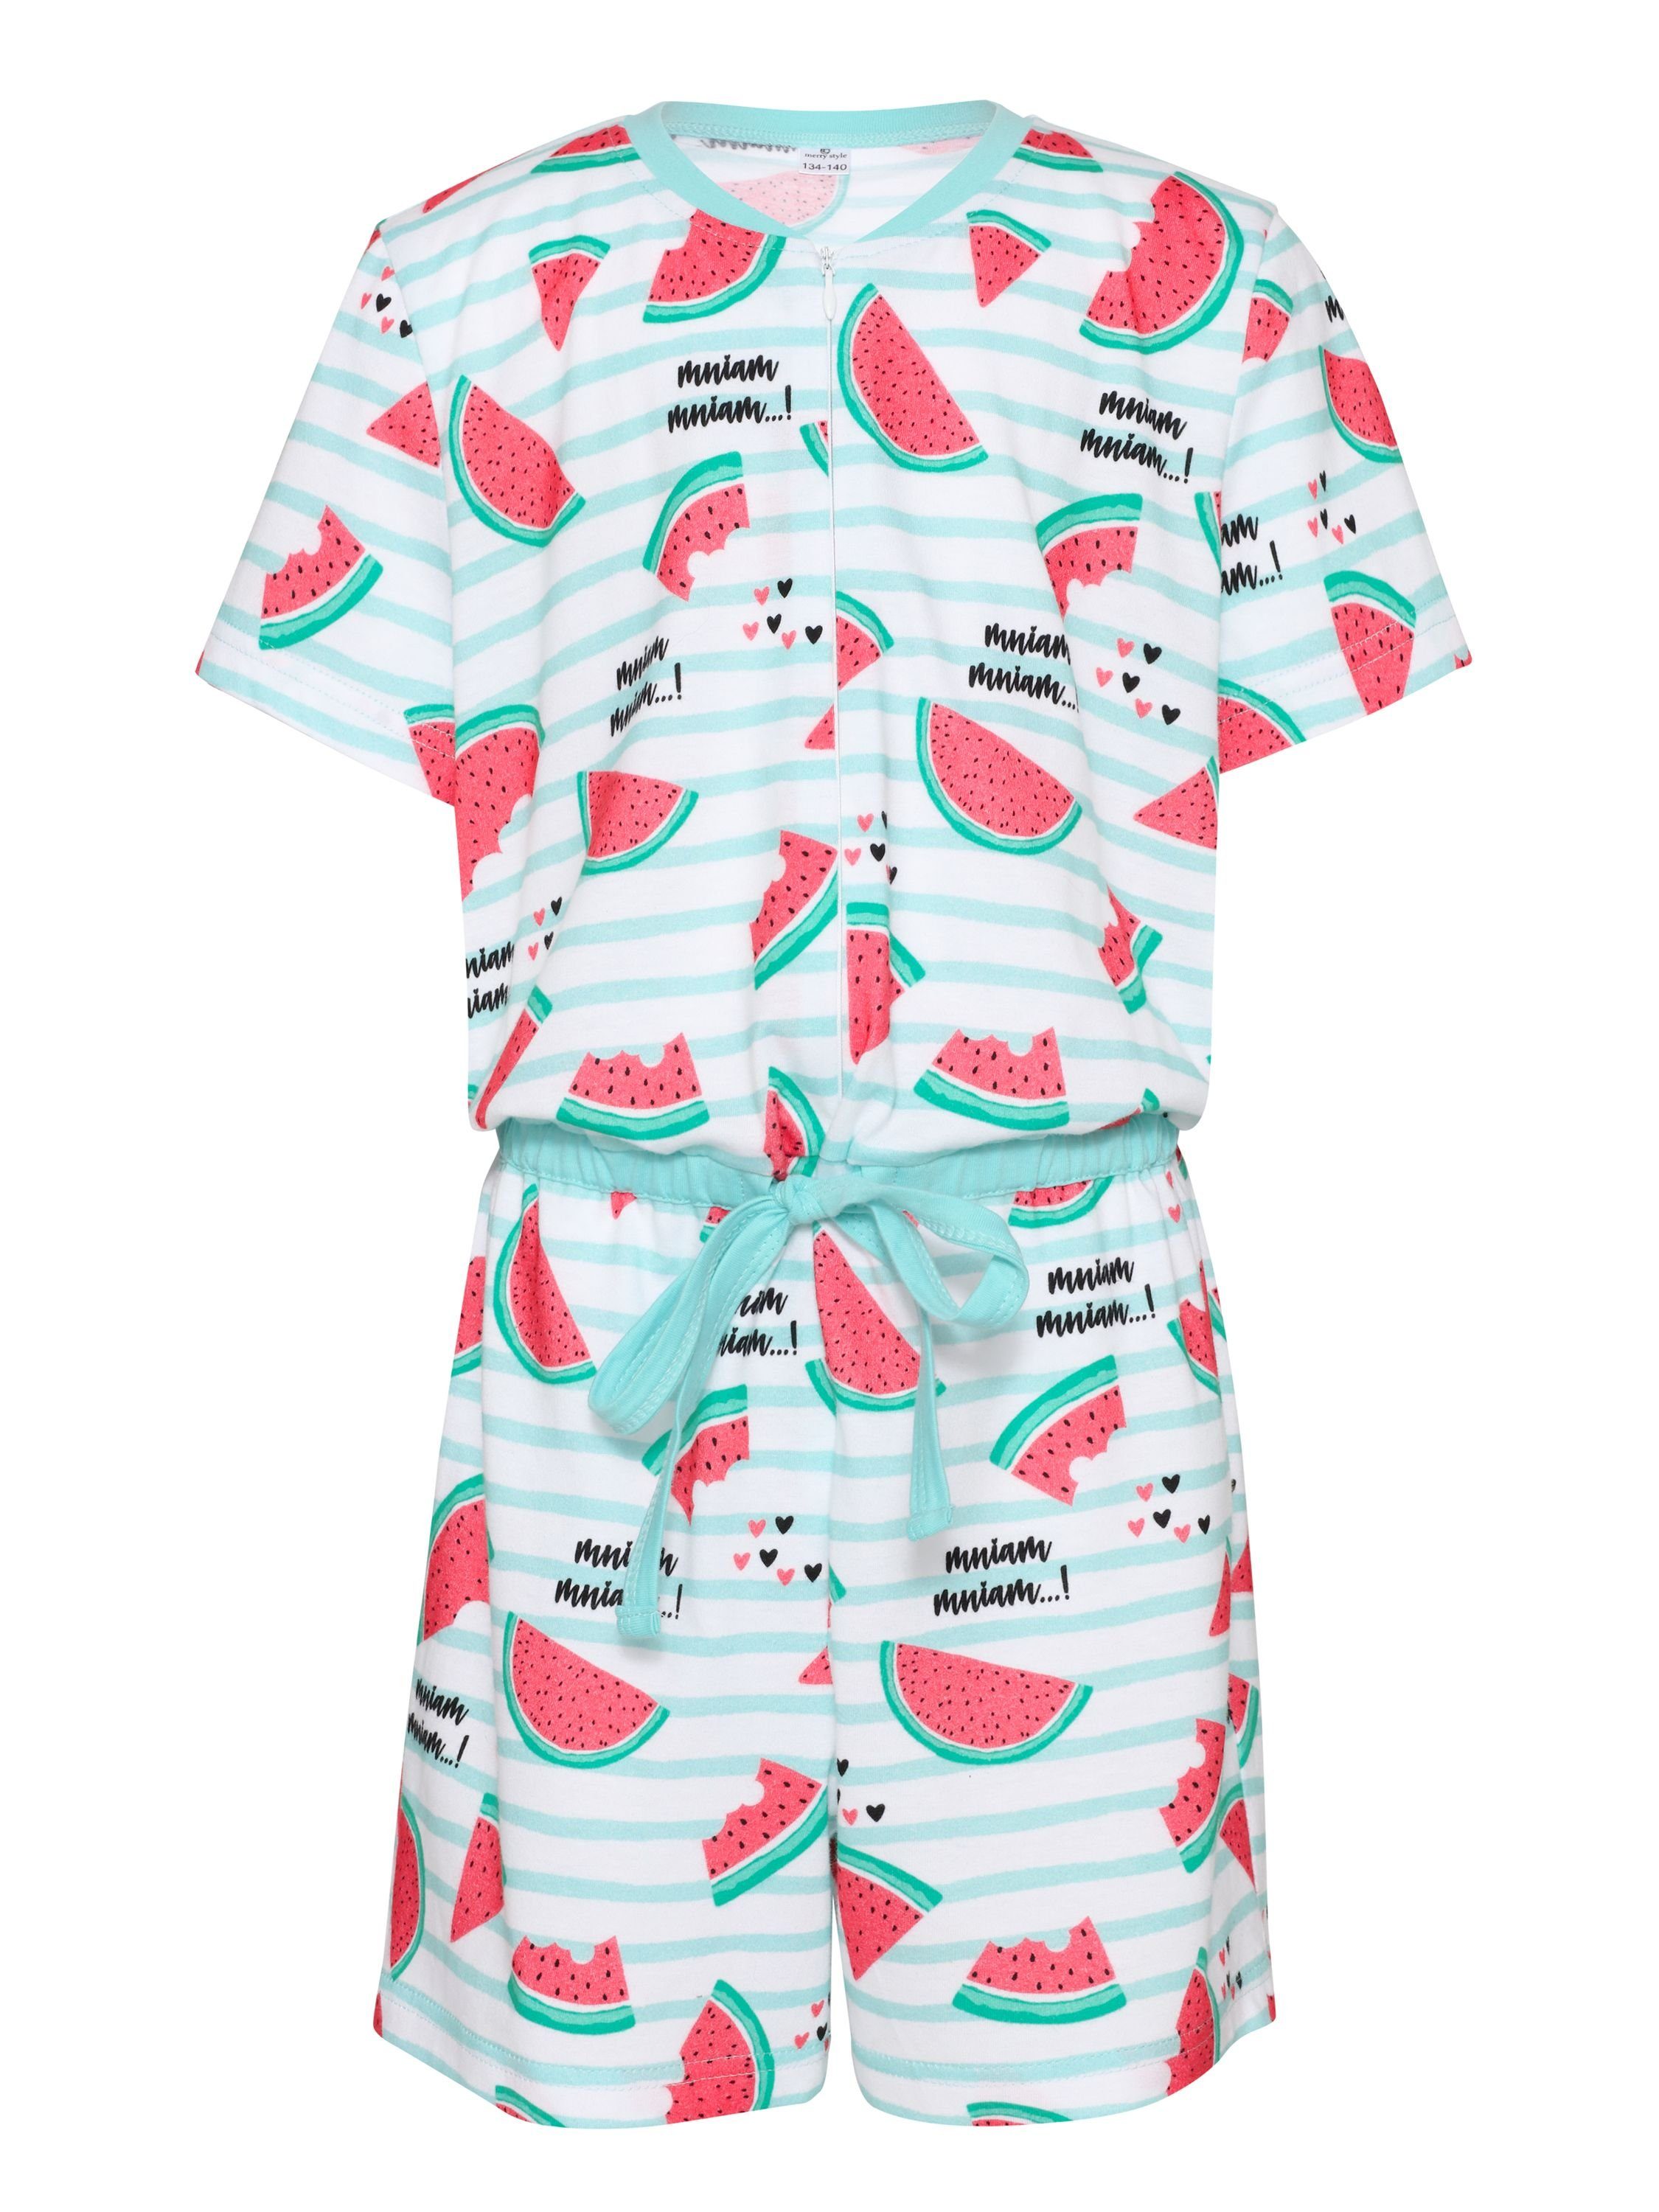 MS10-267 Schlafanzug Overall Wassermelone Merry Schlafanzug Style Short Mädchen